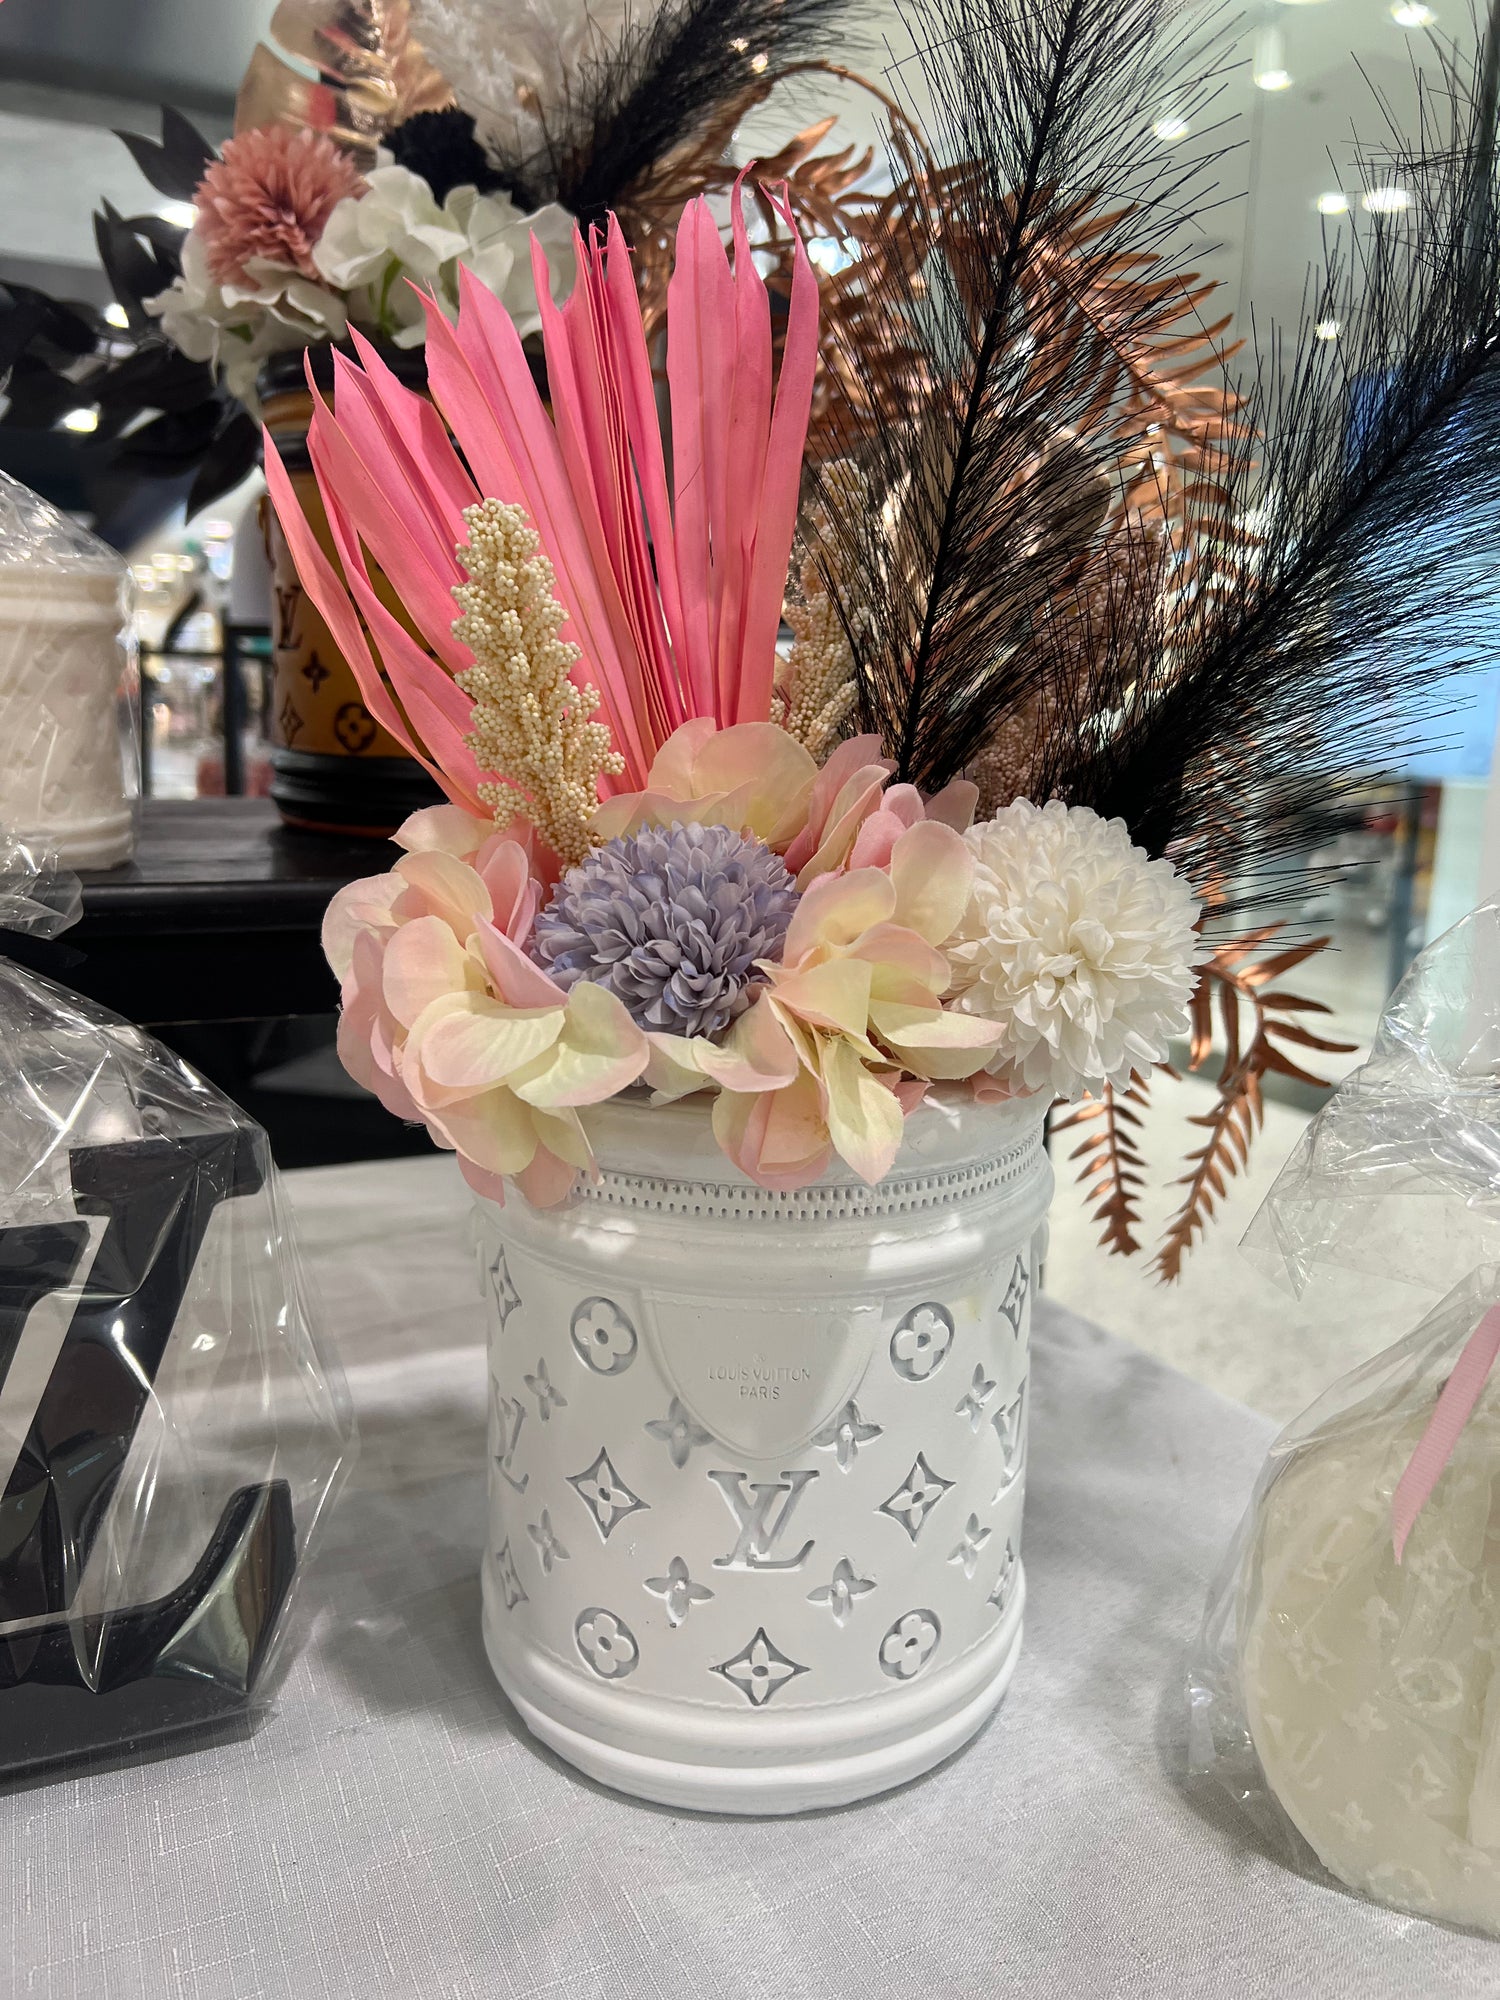 Handbag Vase With Flowers Large size LV Style